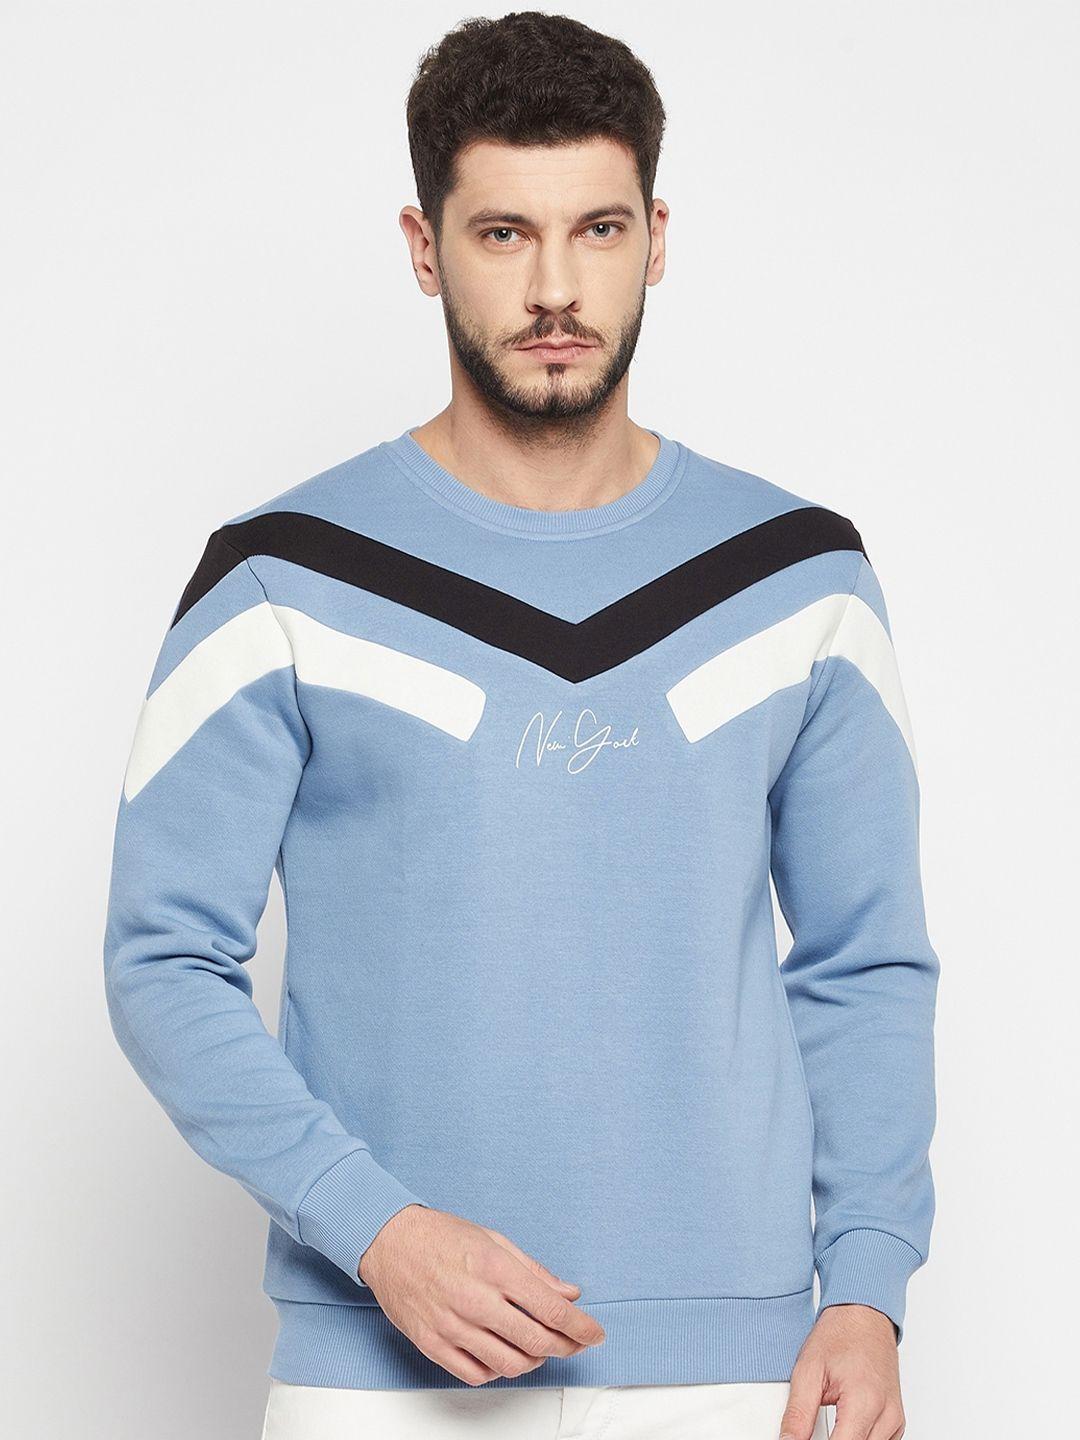 qubic men blue cotton sweatshirt